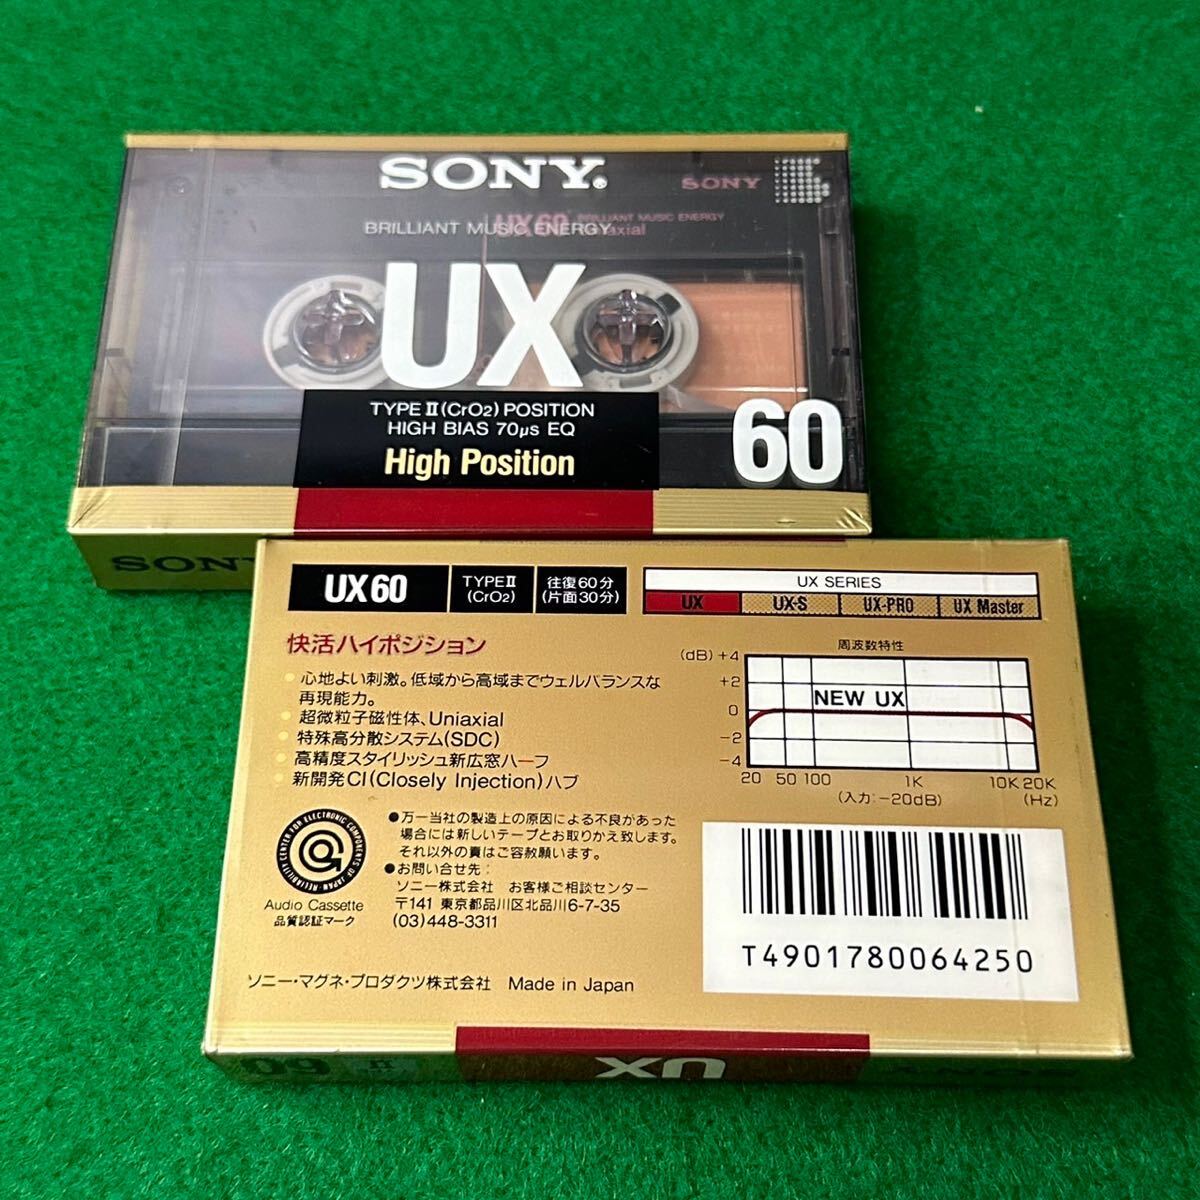 ** новый товар нераспечатанный товар / носитель информации 8 позиций комплект /SONY видео кассетная лента /VHS.HI8/ аудио кассетная лента 